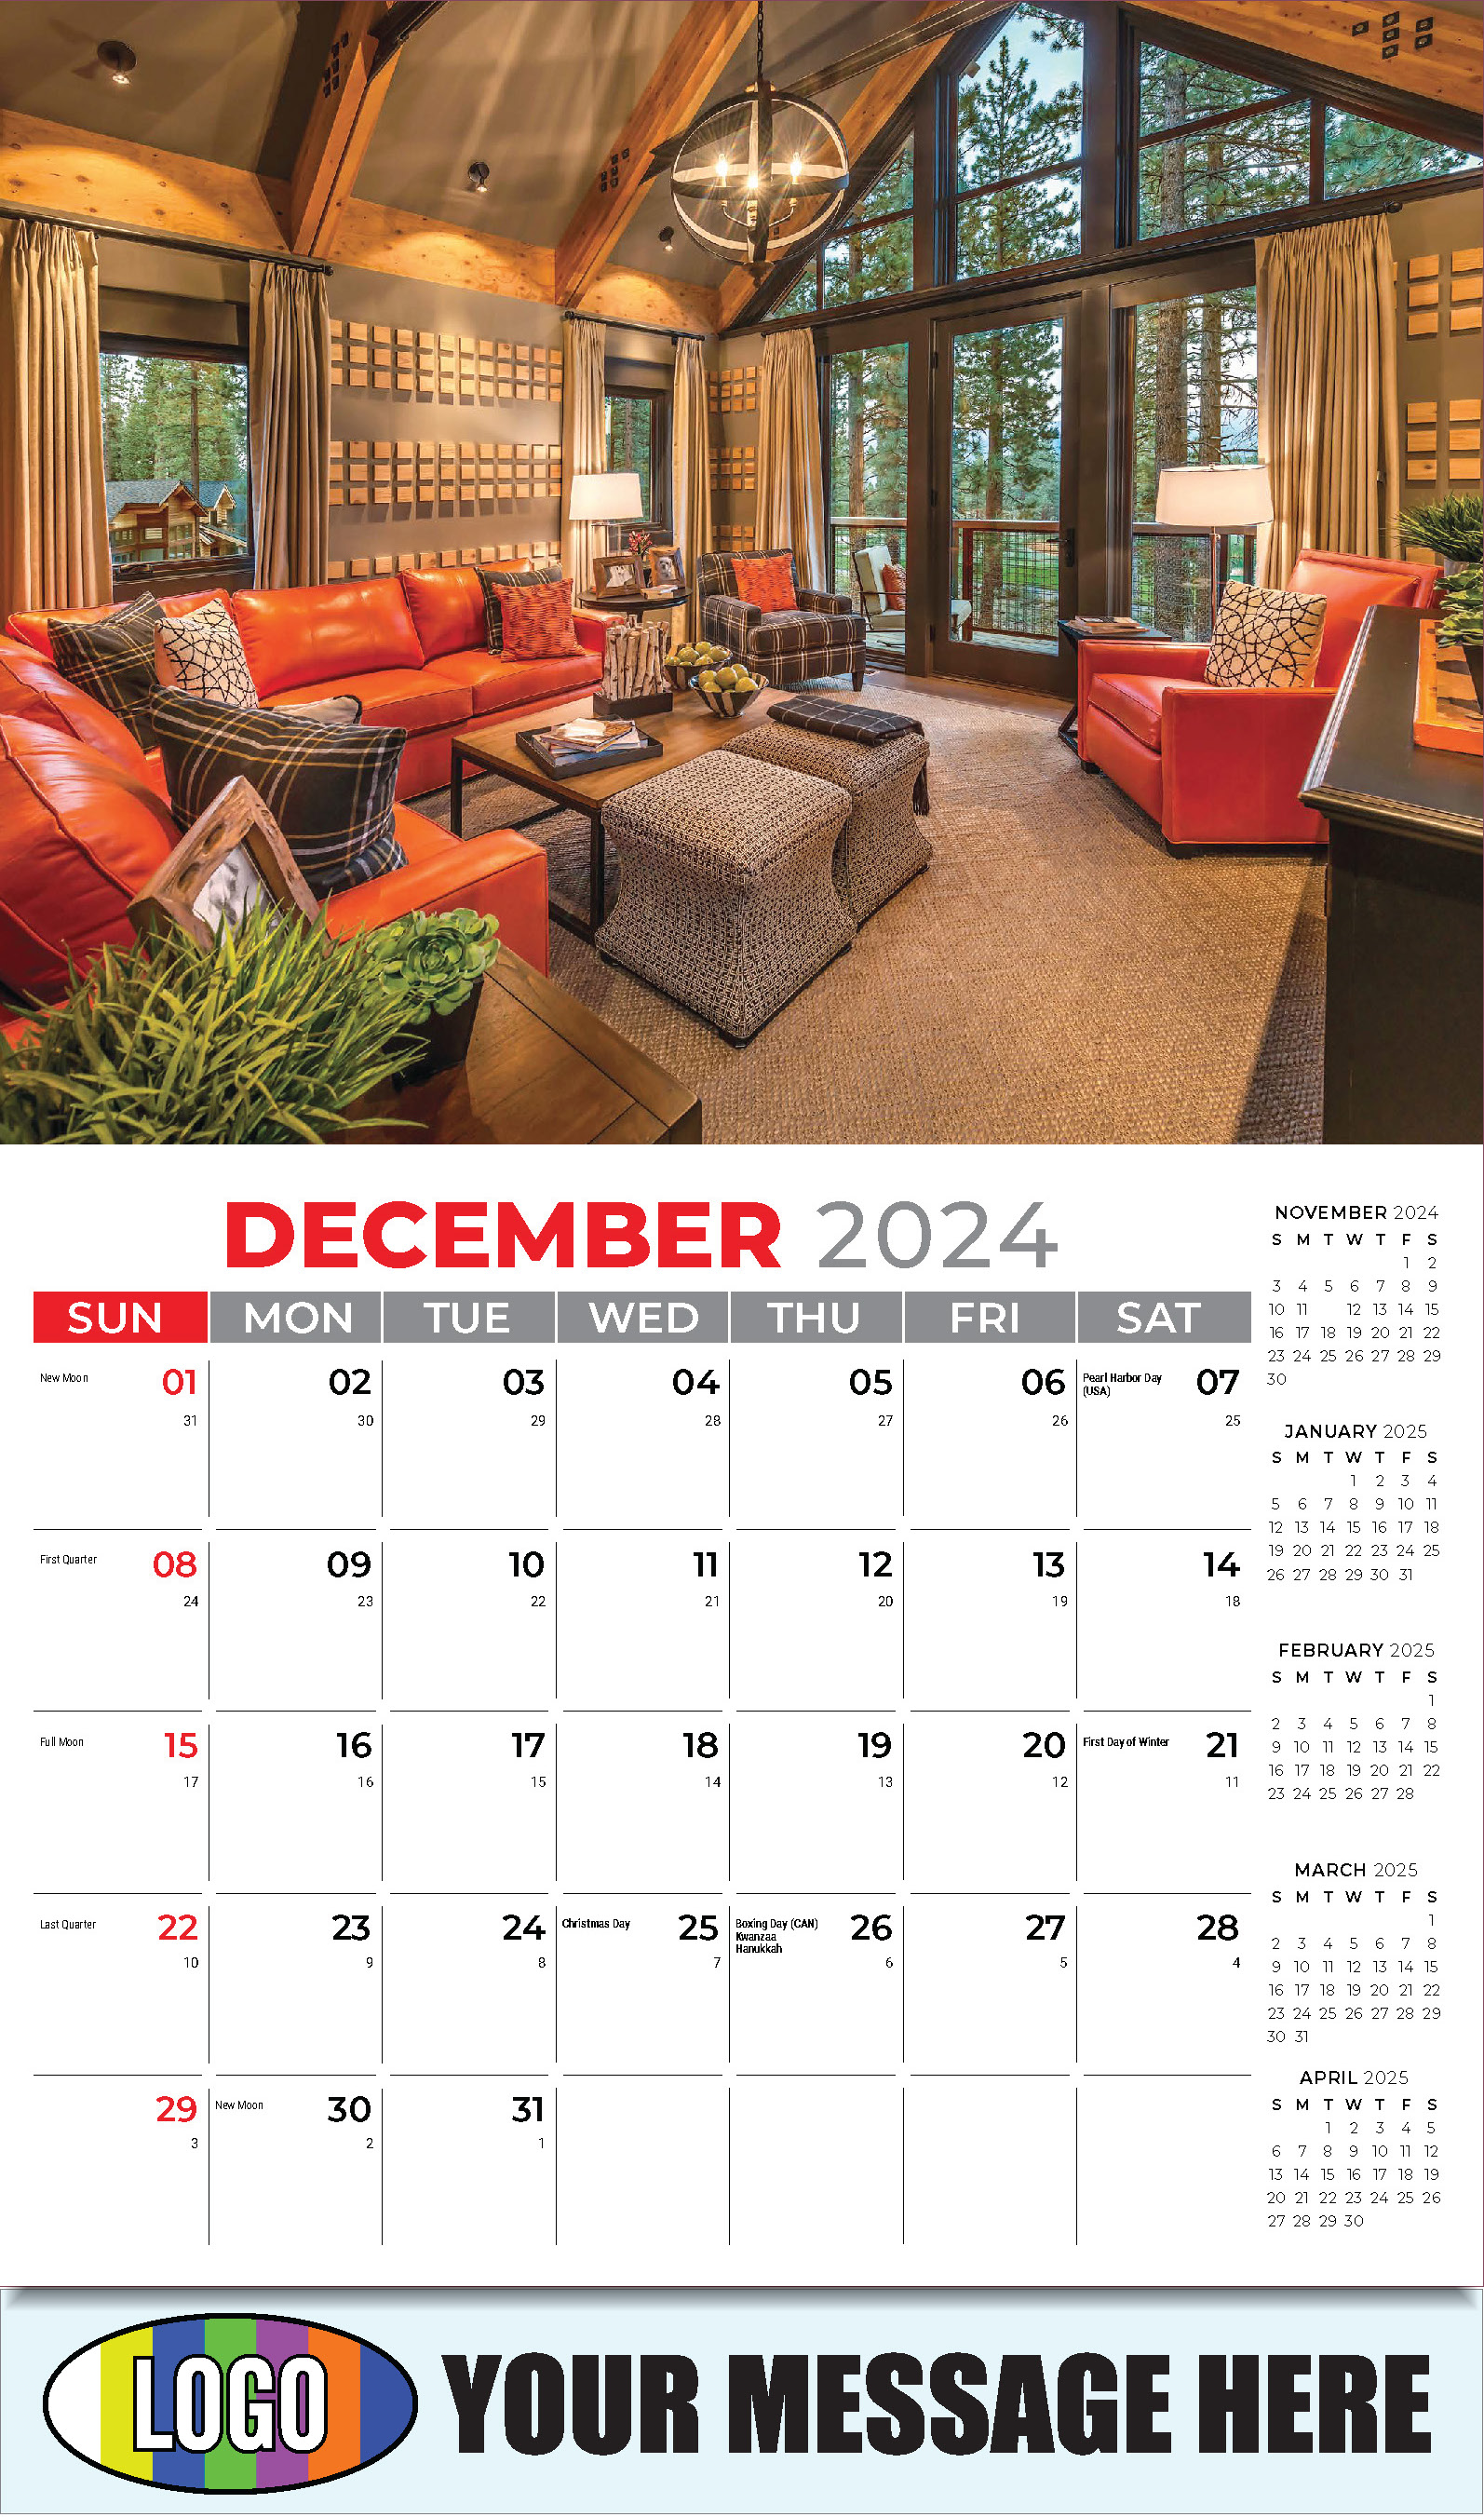 Decor and Design 2025 Interior Design Business Promotional Calendar - December_a